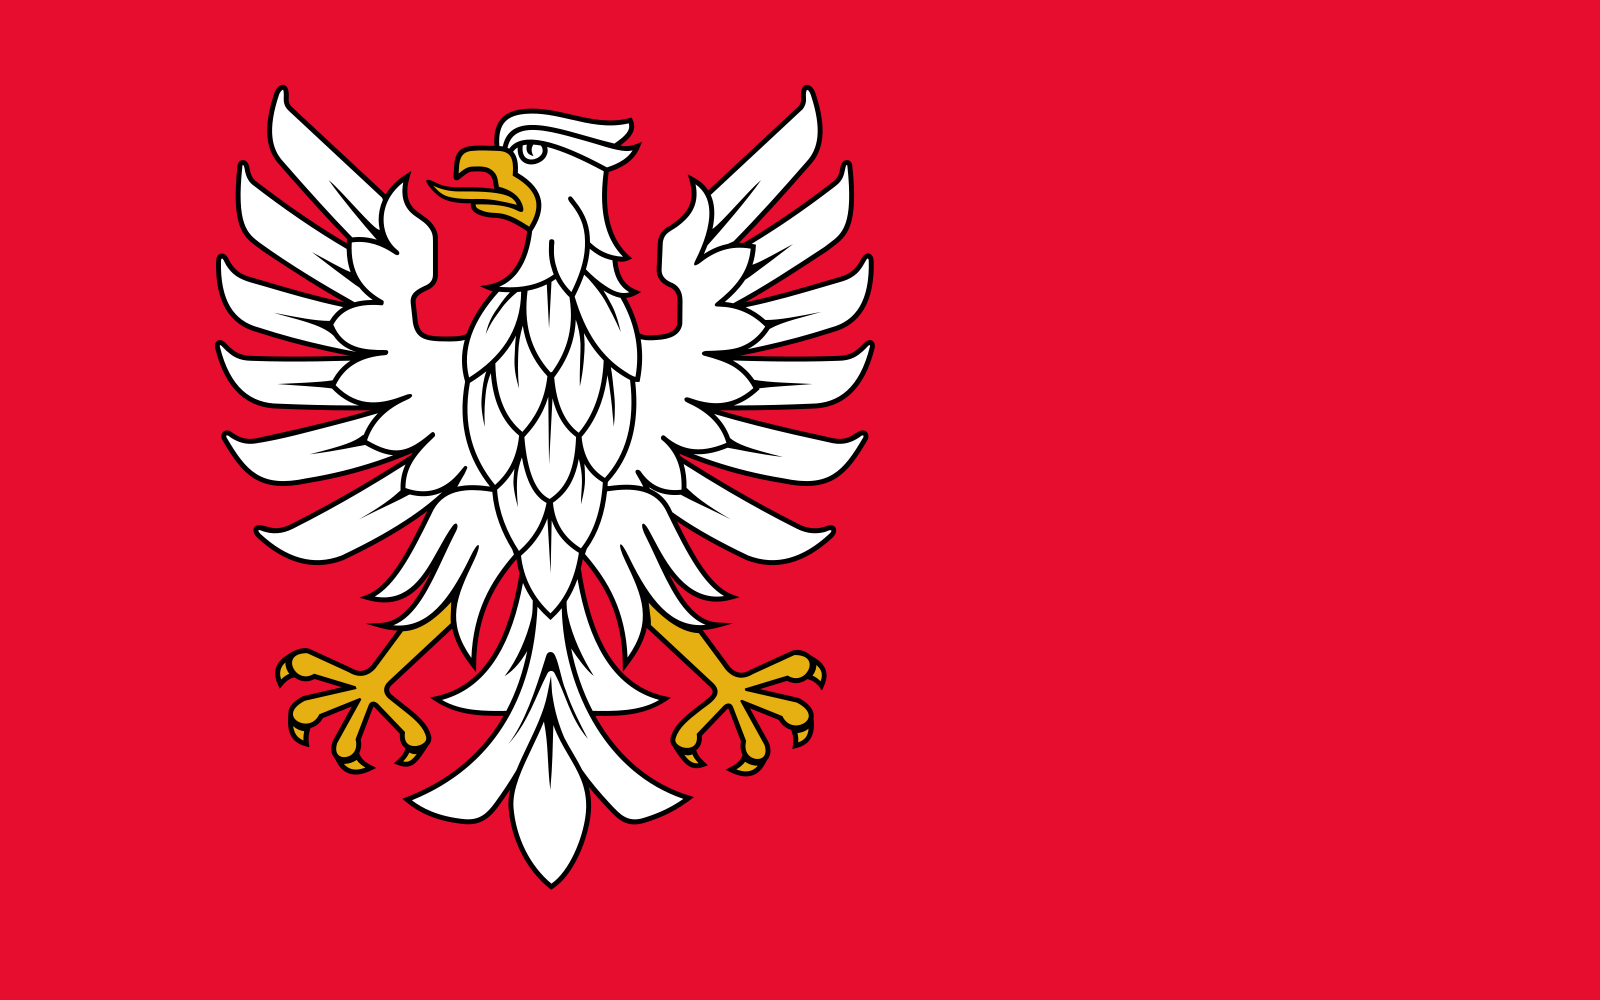 Vlajka mazovského vojvodství | vlajka, prapor, symbol, vlaječka, obrázek | Polská vojvodství |  1600x1000 px